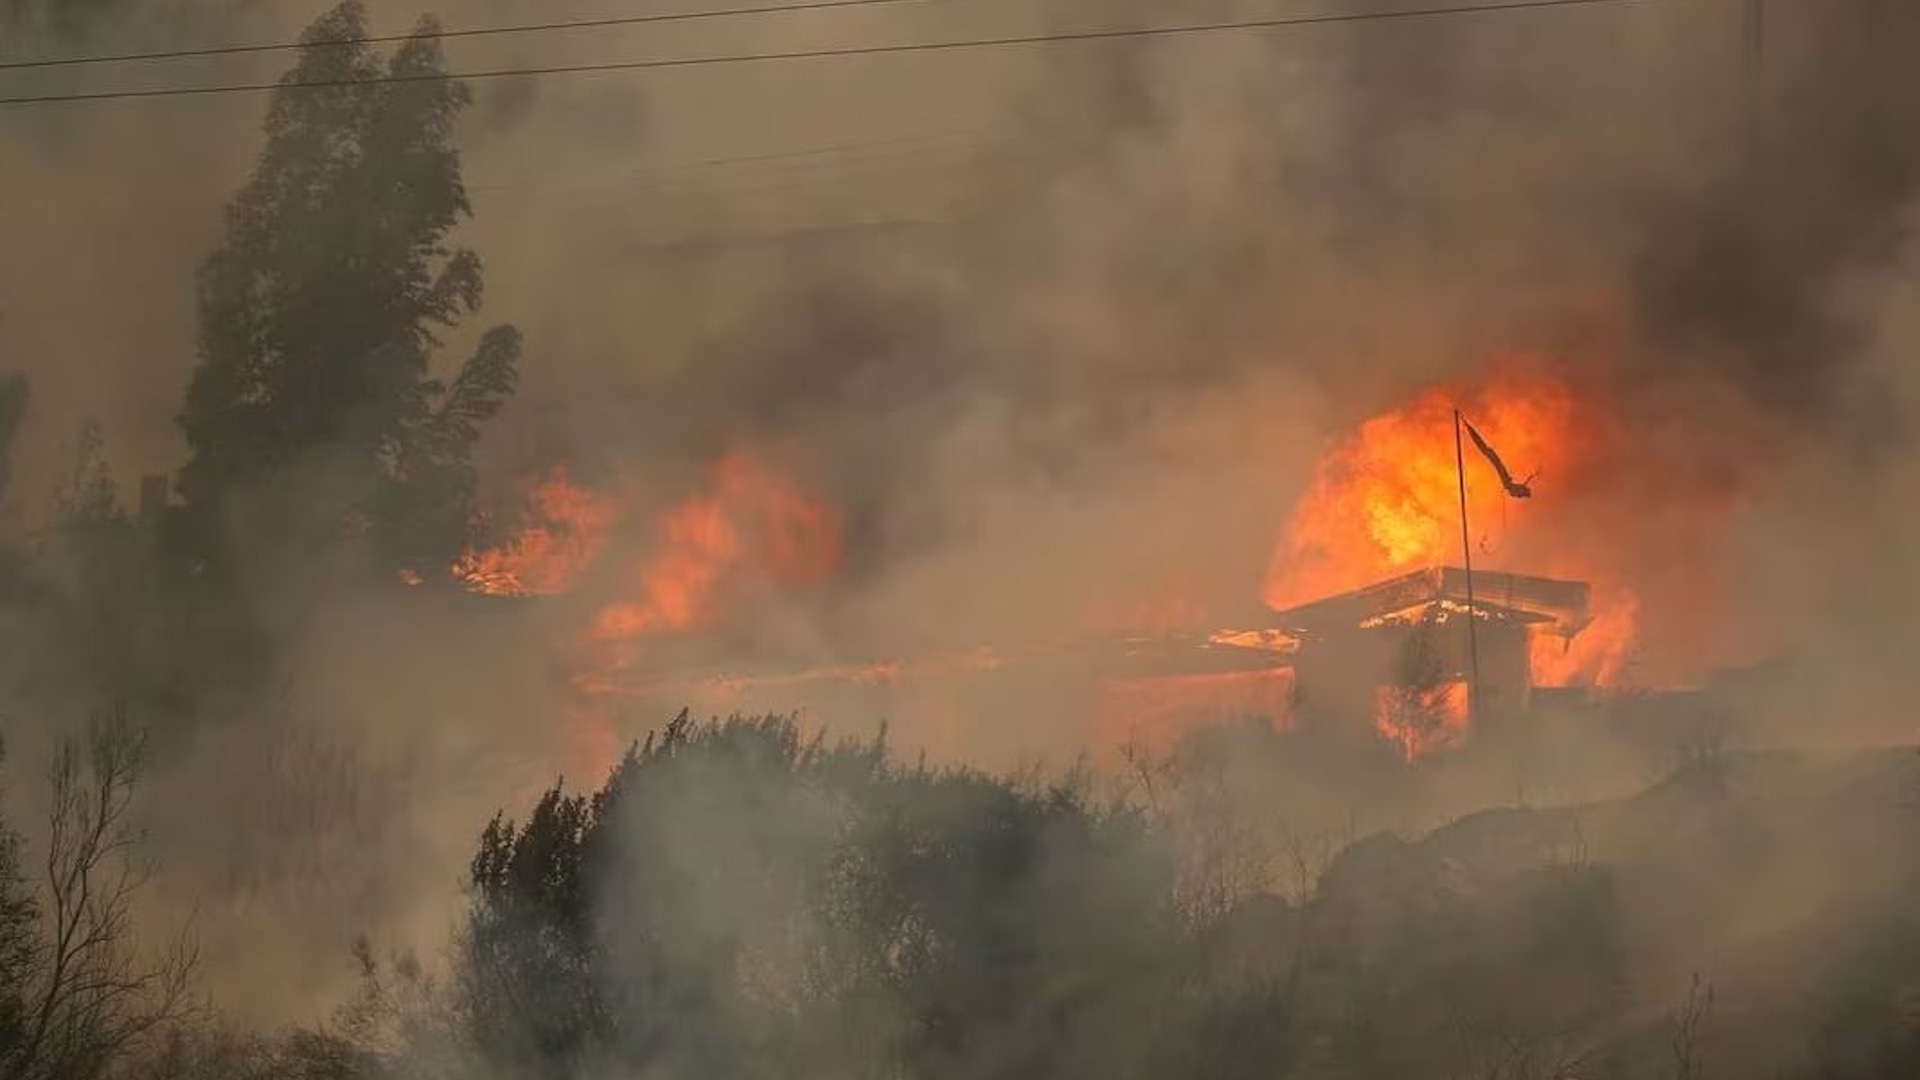 चिली के जंगलों में लगी आग से 64 लोगों की मौत, शहरी इलाकों को खतरा